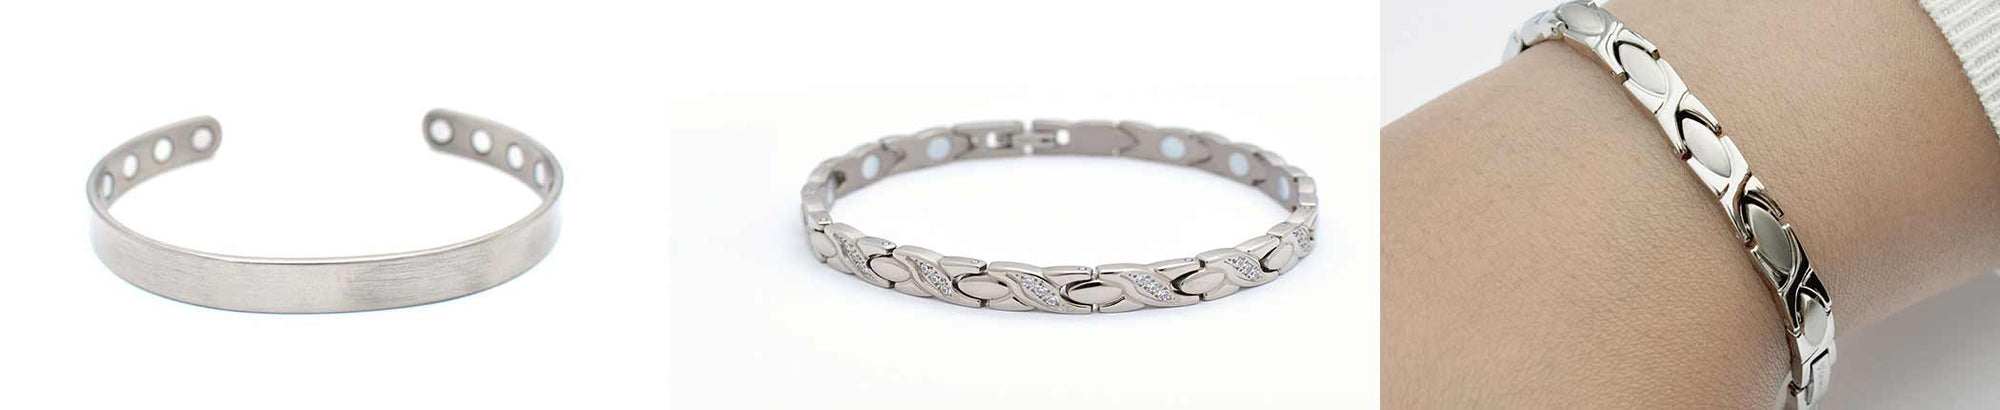 <font color=#000000>Ladies silver magnetic bracelets: FAQ’s</font>